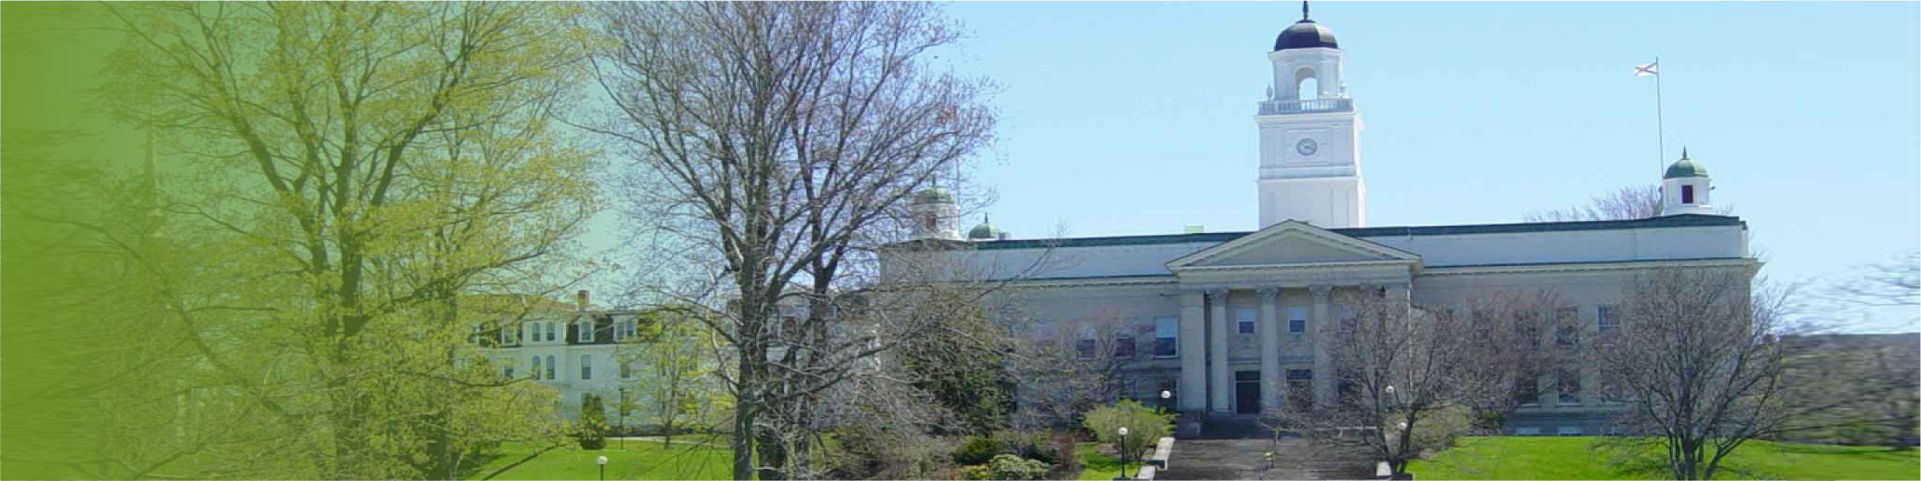 Acadia University - Main Canada